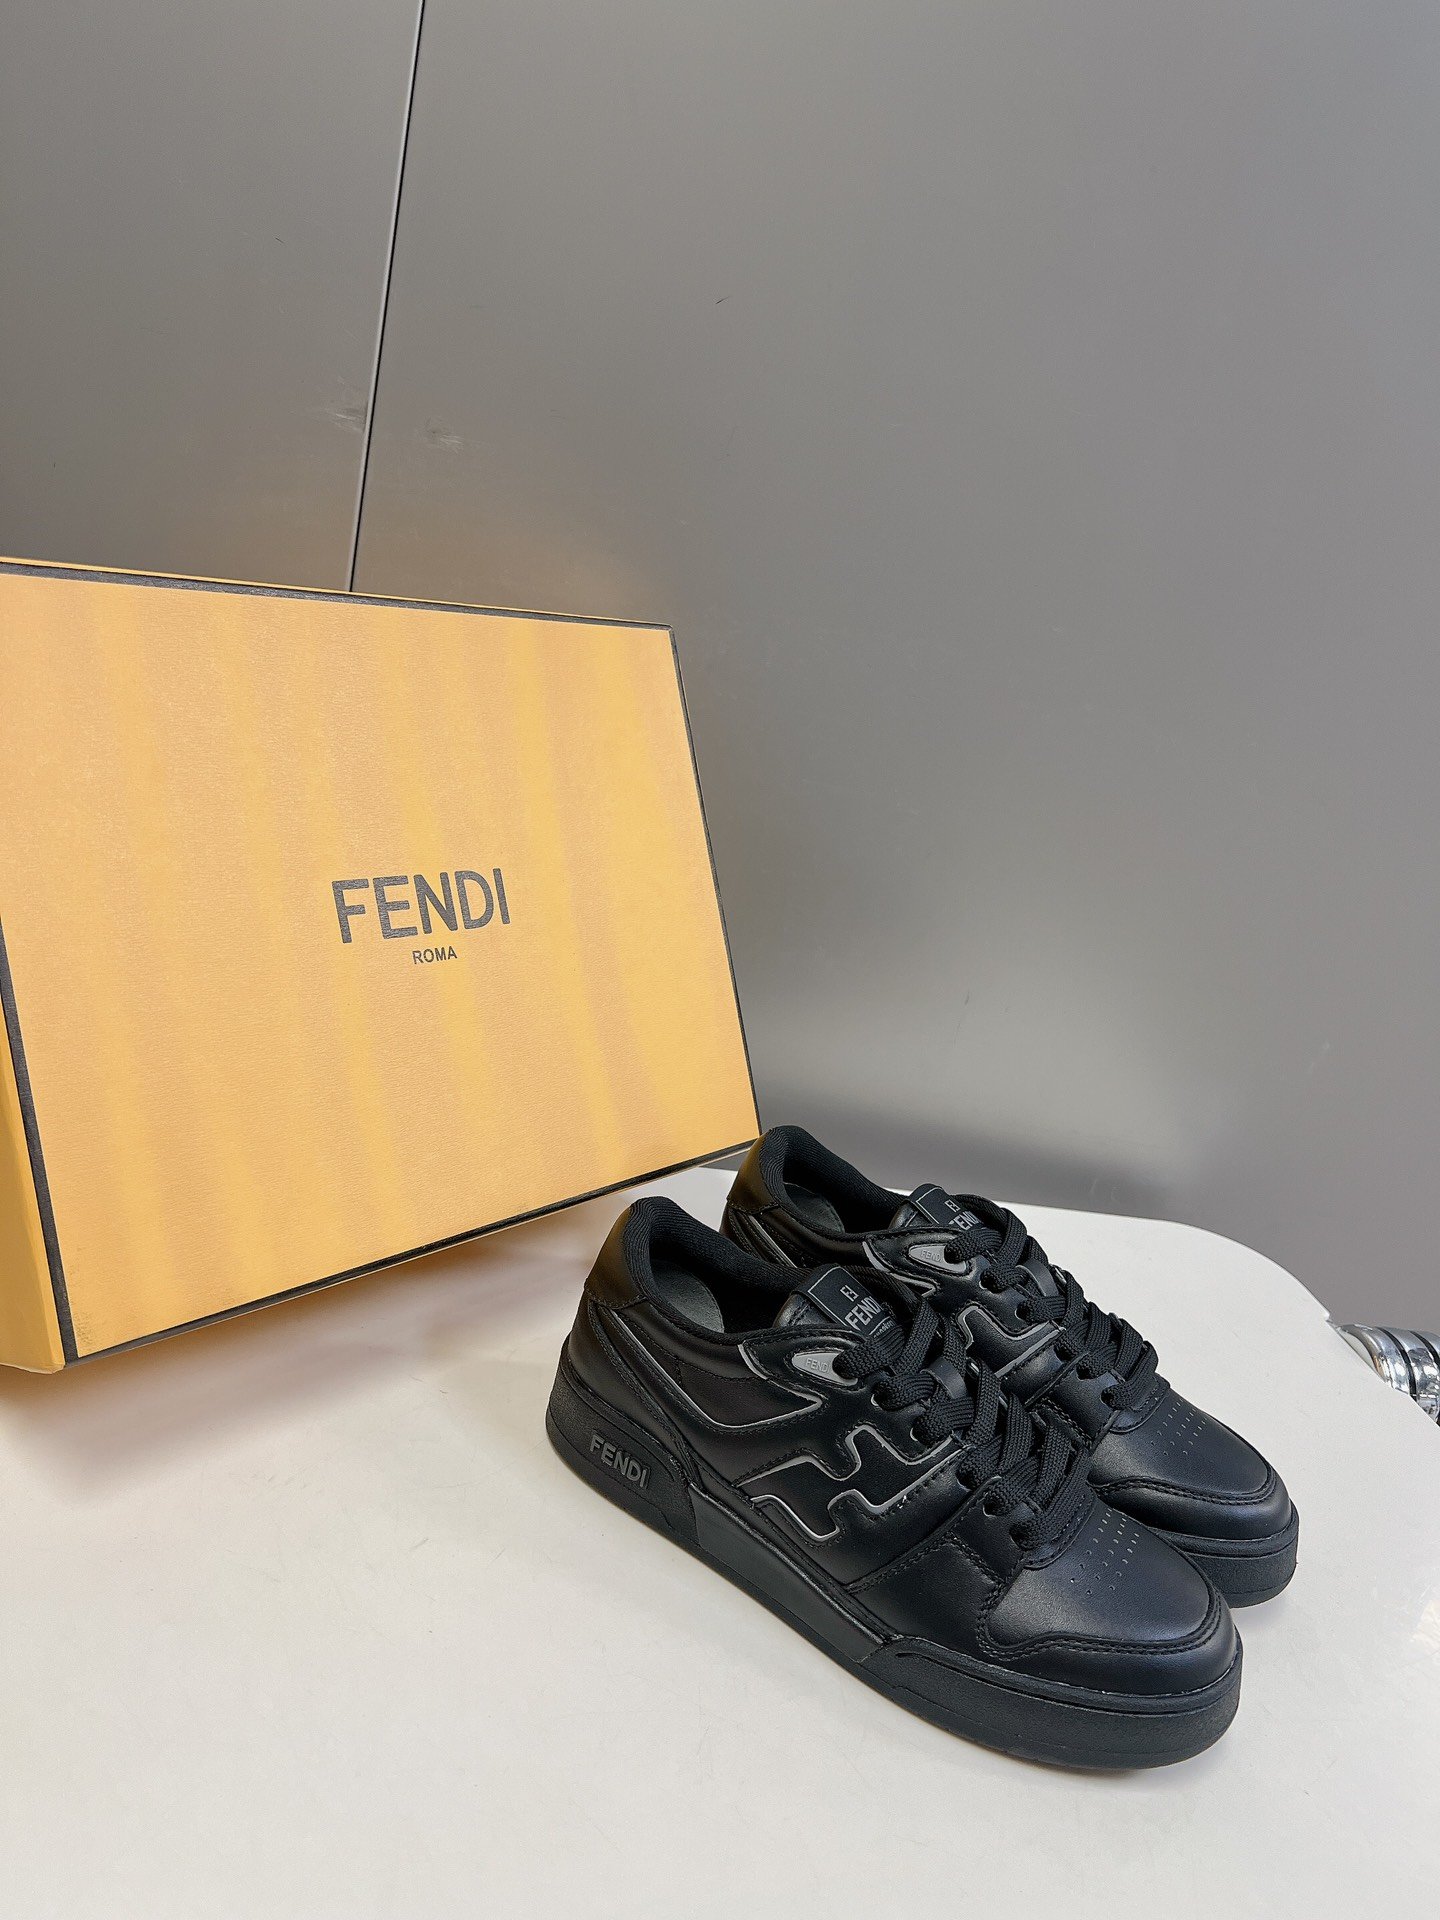 男装10Fendi芬迪经典滑板鞋系列情侣休闲运动鞋FDmatch原版7300购入一比一复刻设计师KimJ